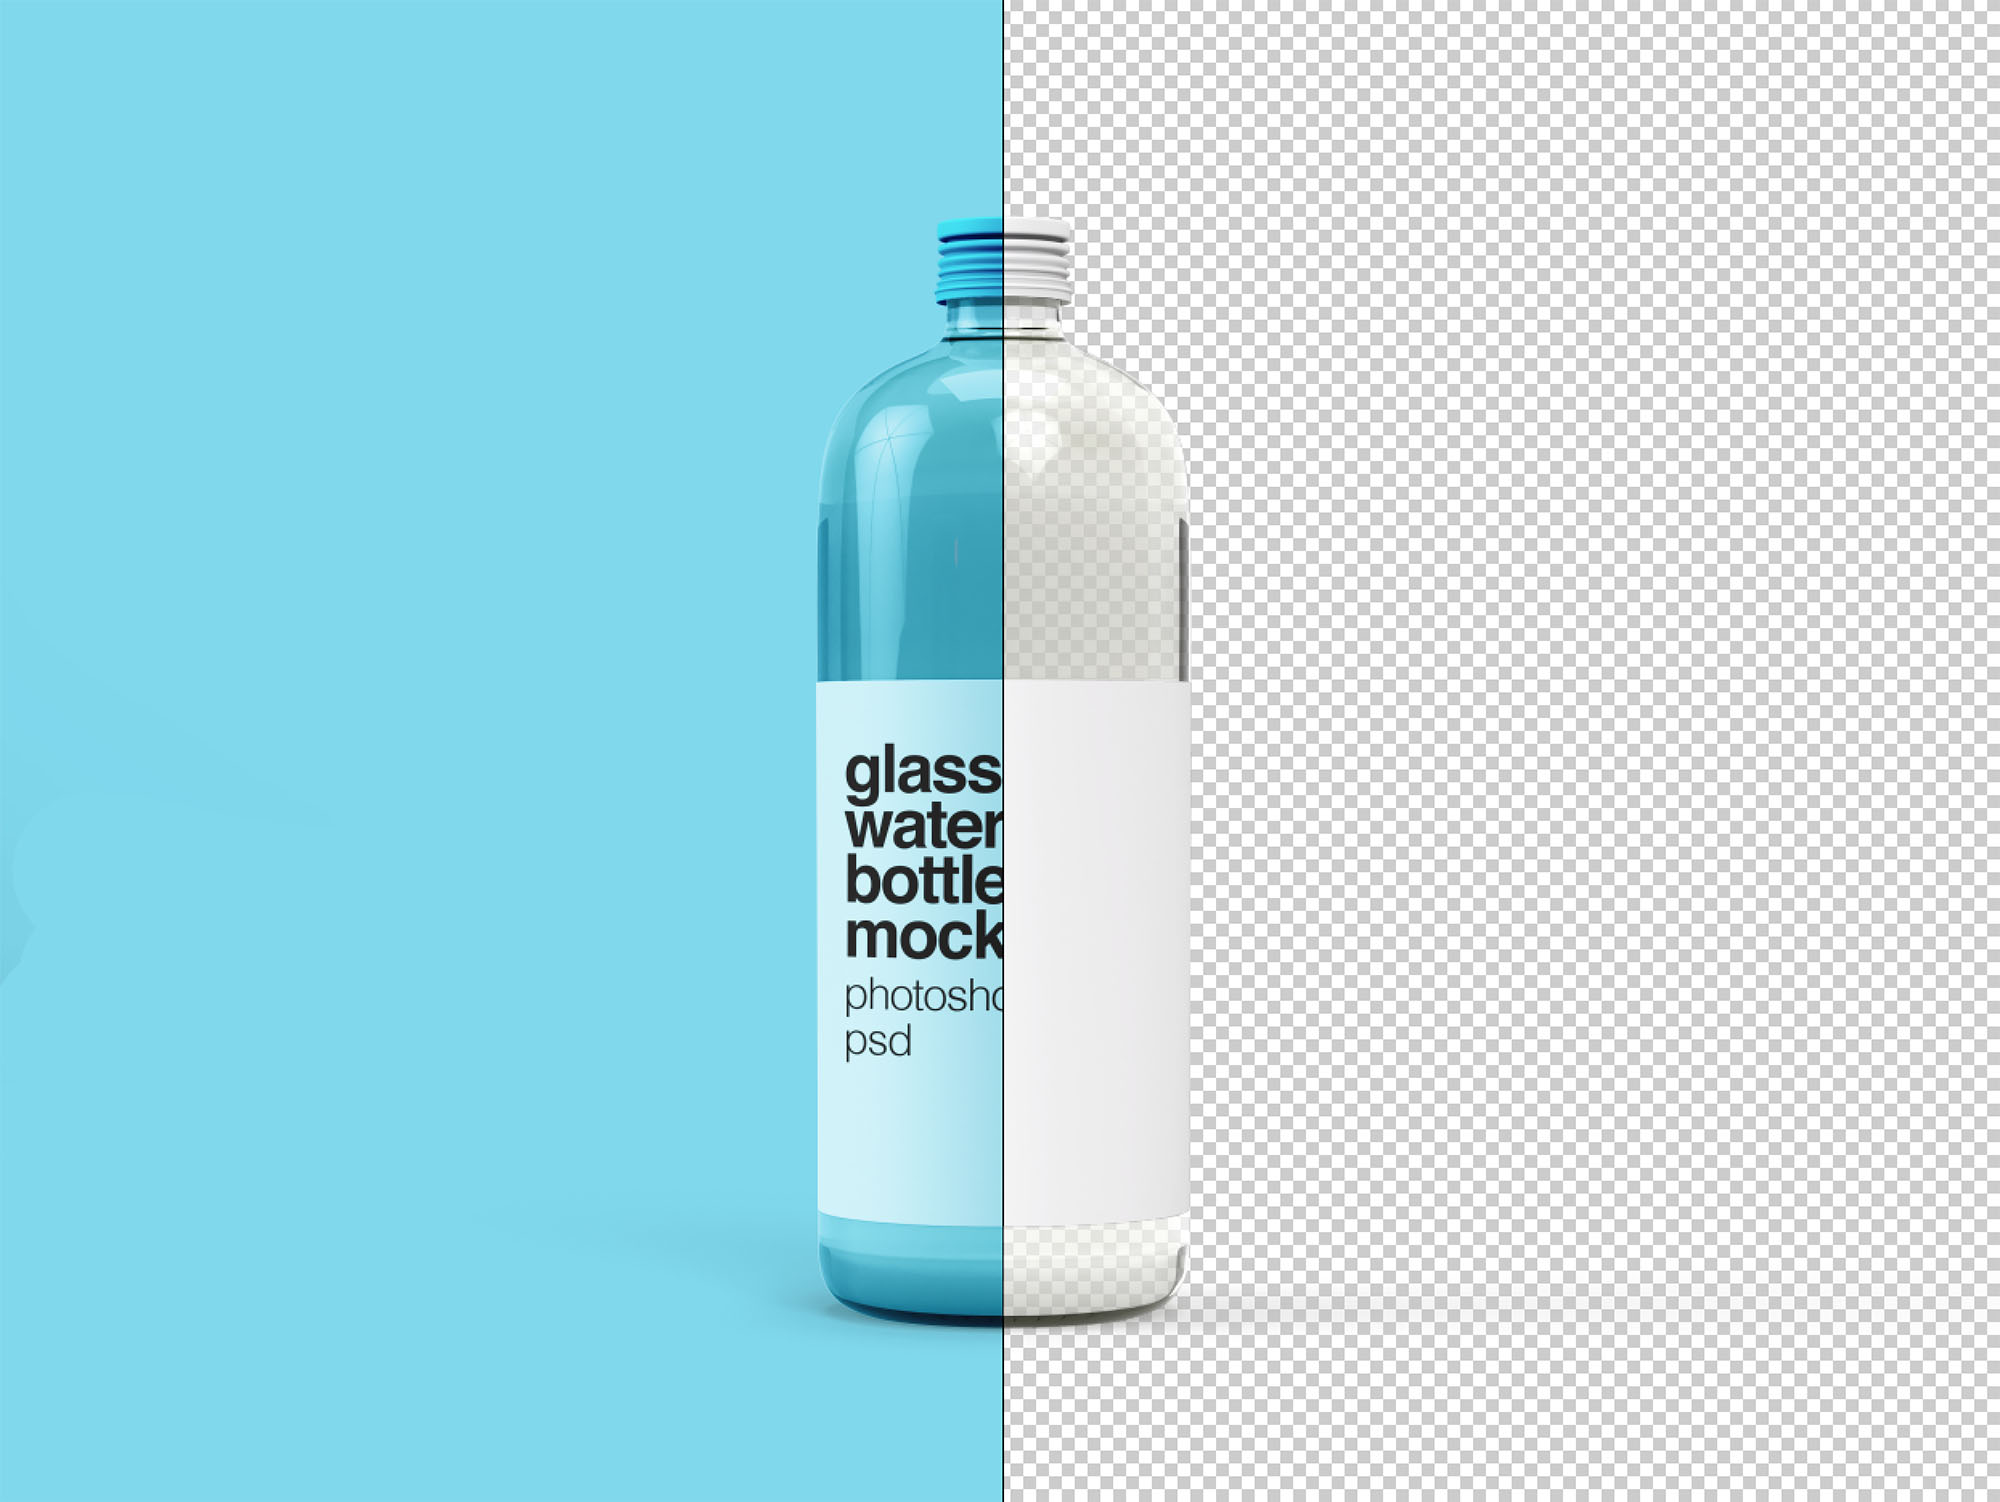 透明玻璃瓶包装设计贴图展示模版 Glass Water Bo